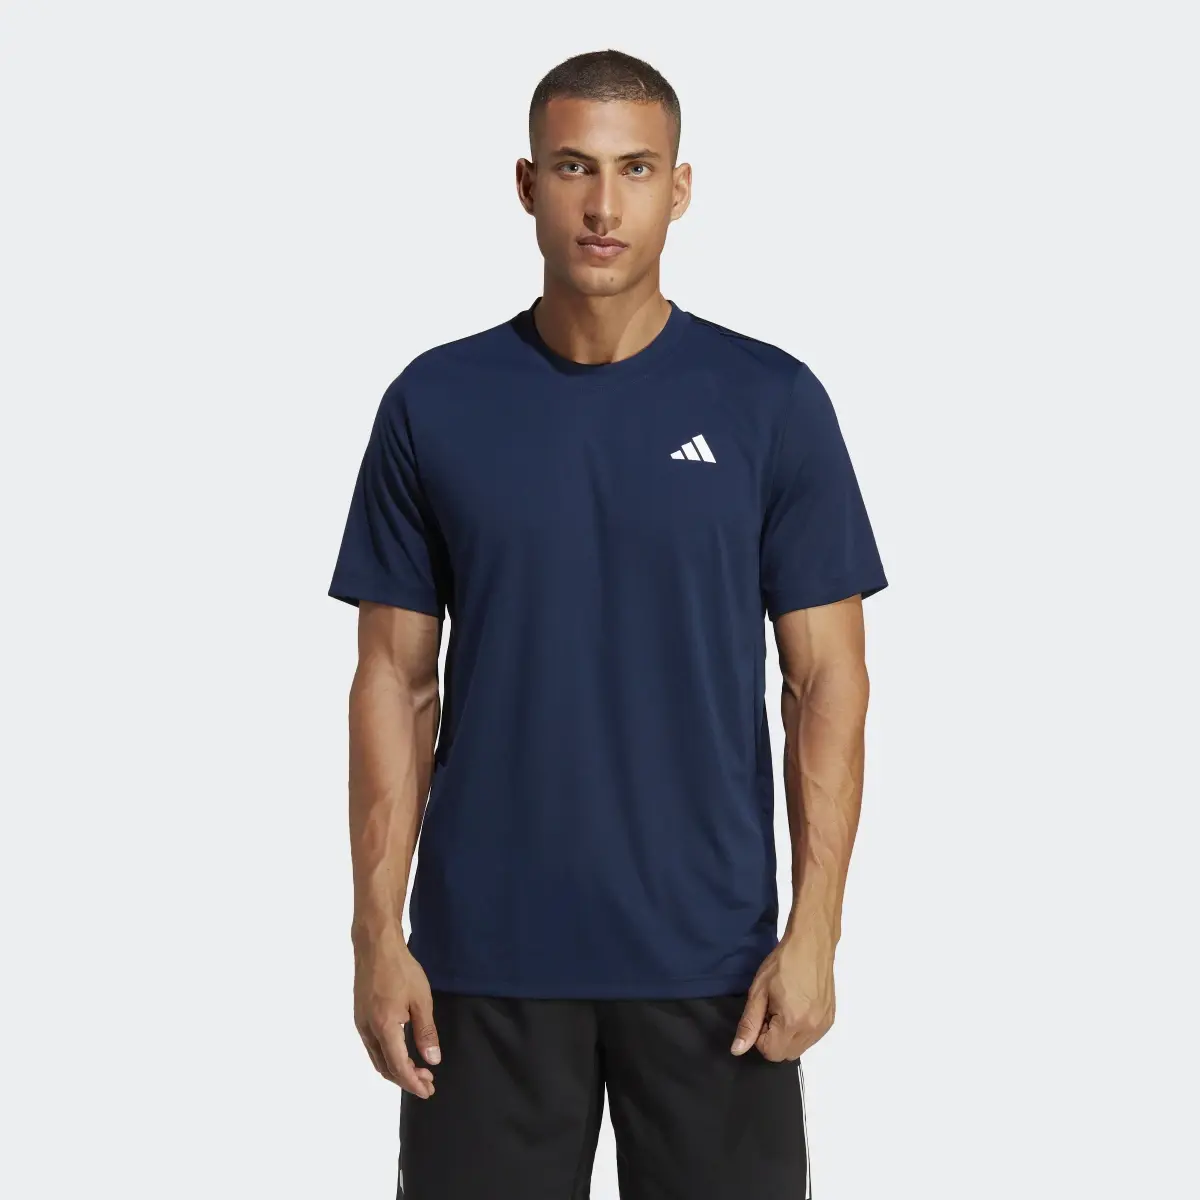 Adidas Club Tennis T-Shirt. 2